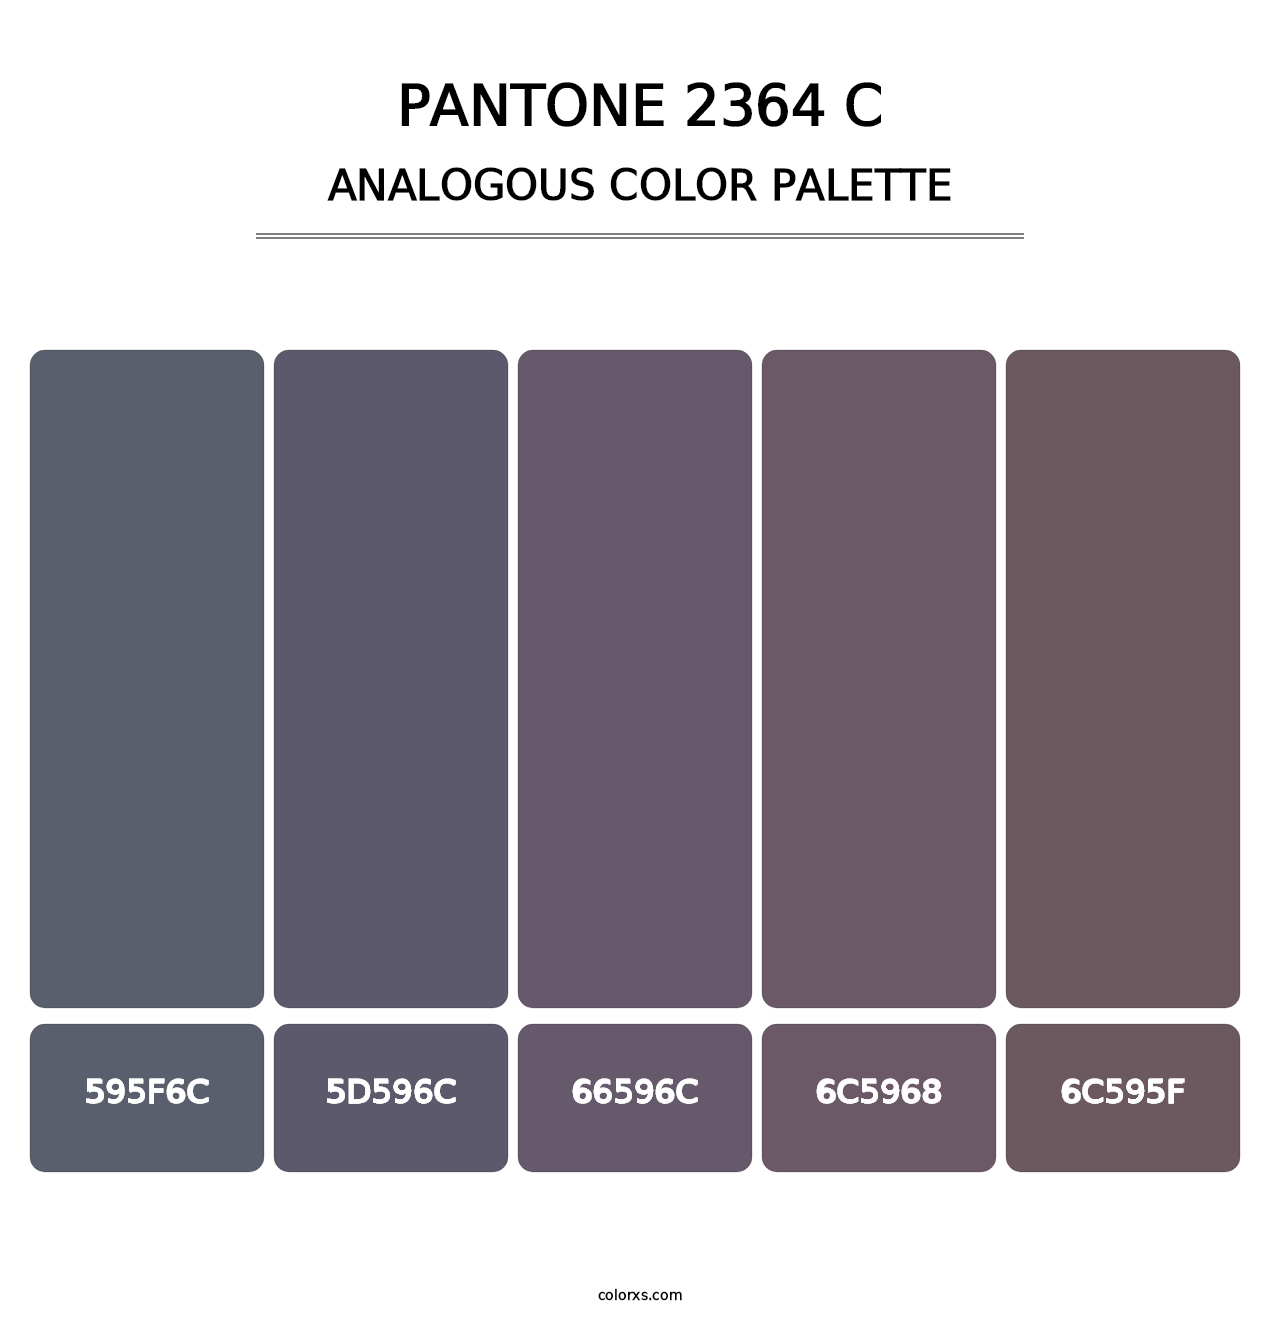 PANTONE 2364 C - Analogous Color Palette